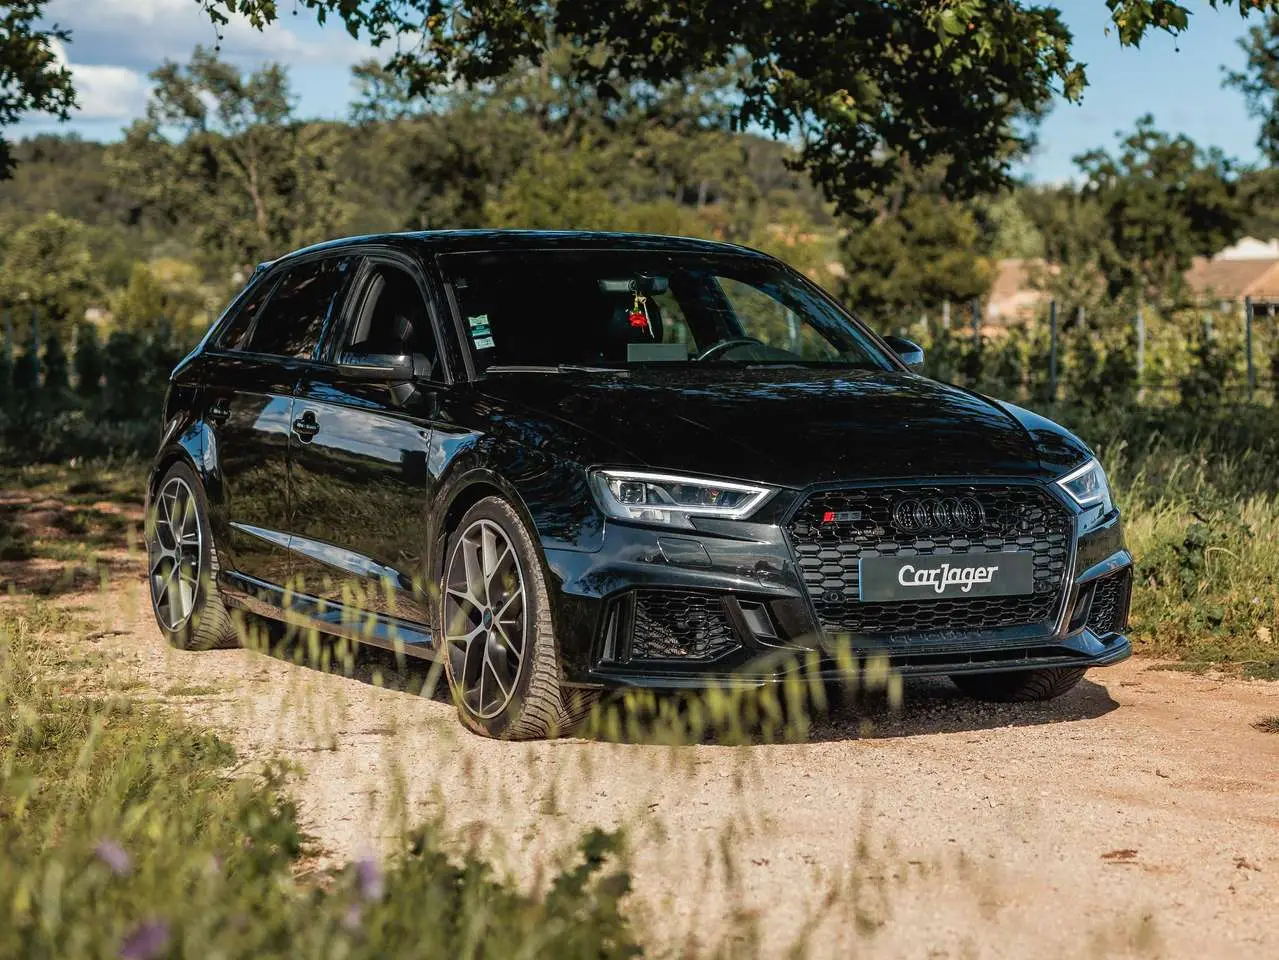 Photo 1 : Audi Rs3 2017 Petrol